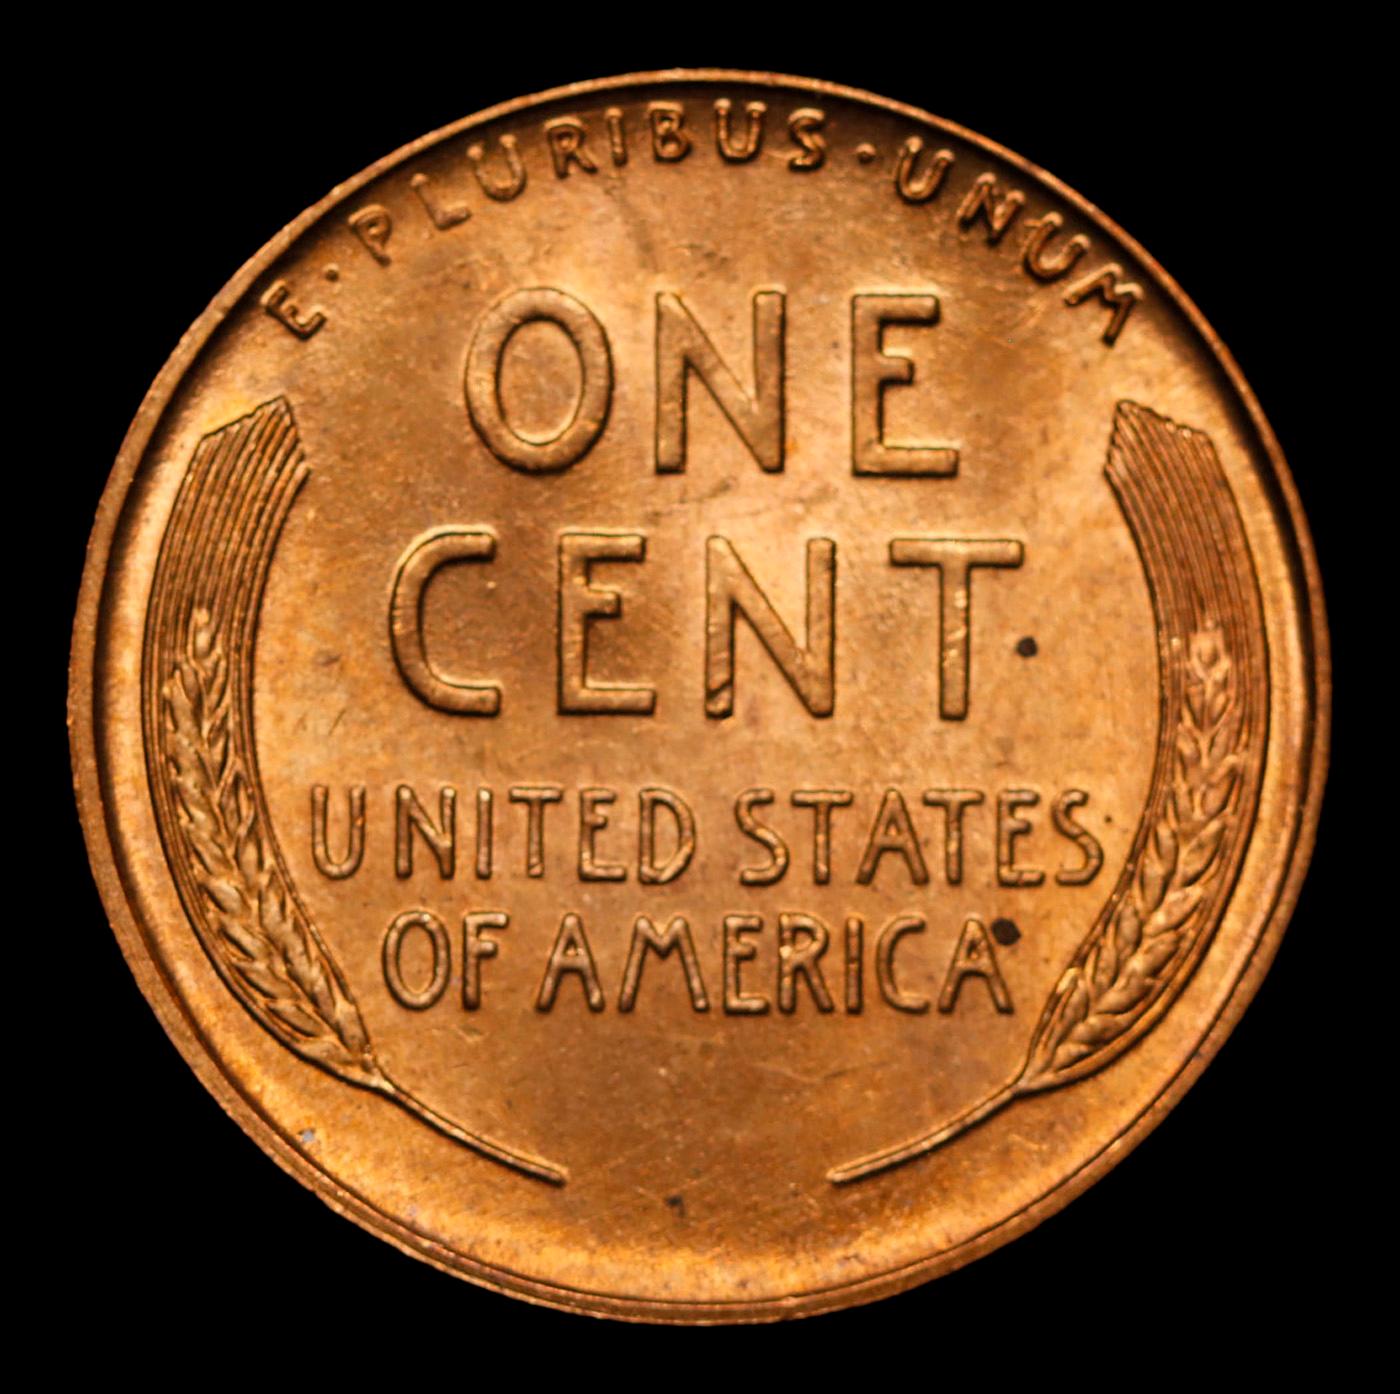 1945-d Lincoln Cent 1c Grades GEM+ Unc RD